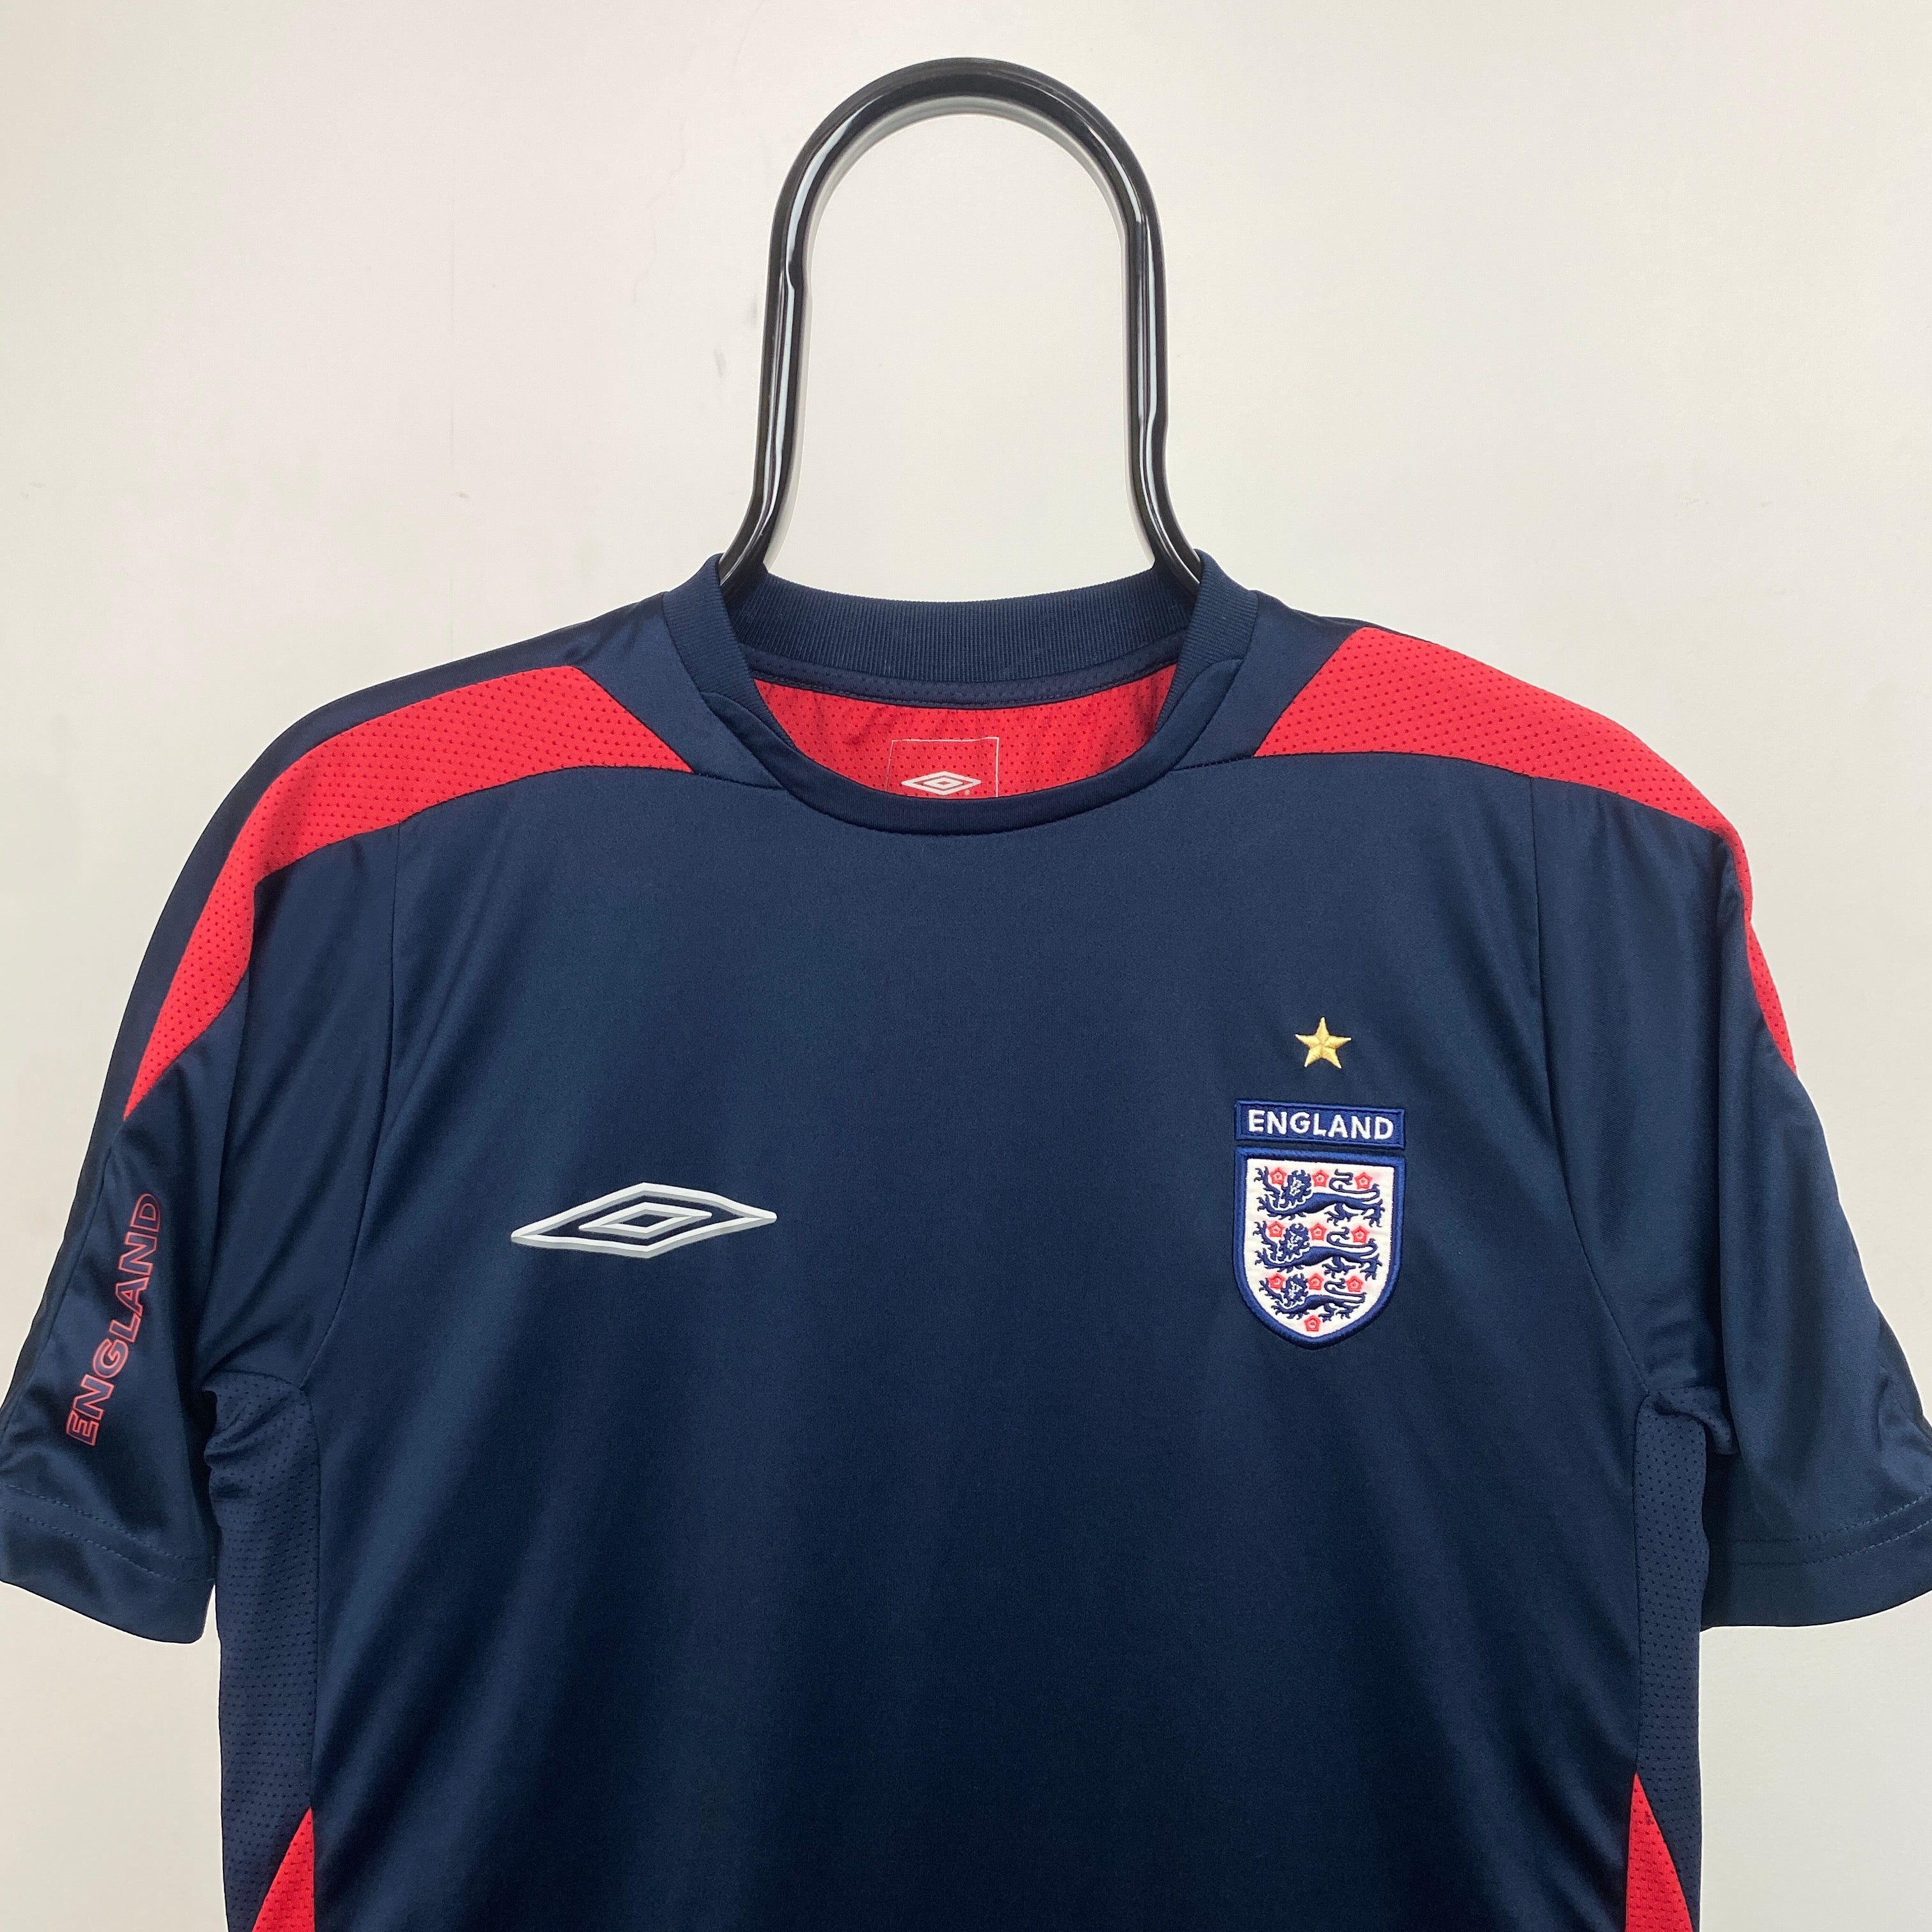 Retro Umbro England Football Shirt T-Shirt Blue Small